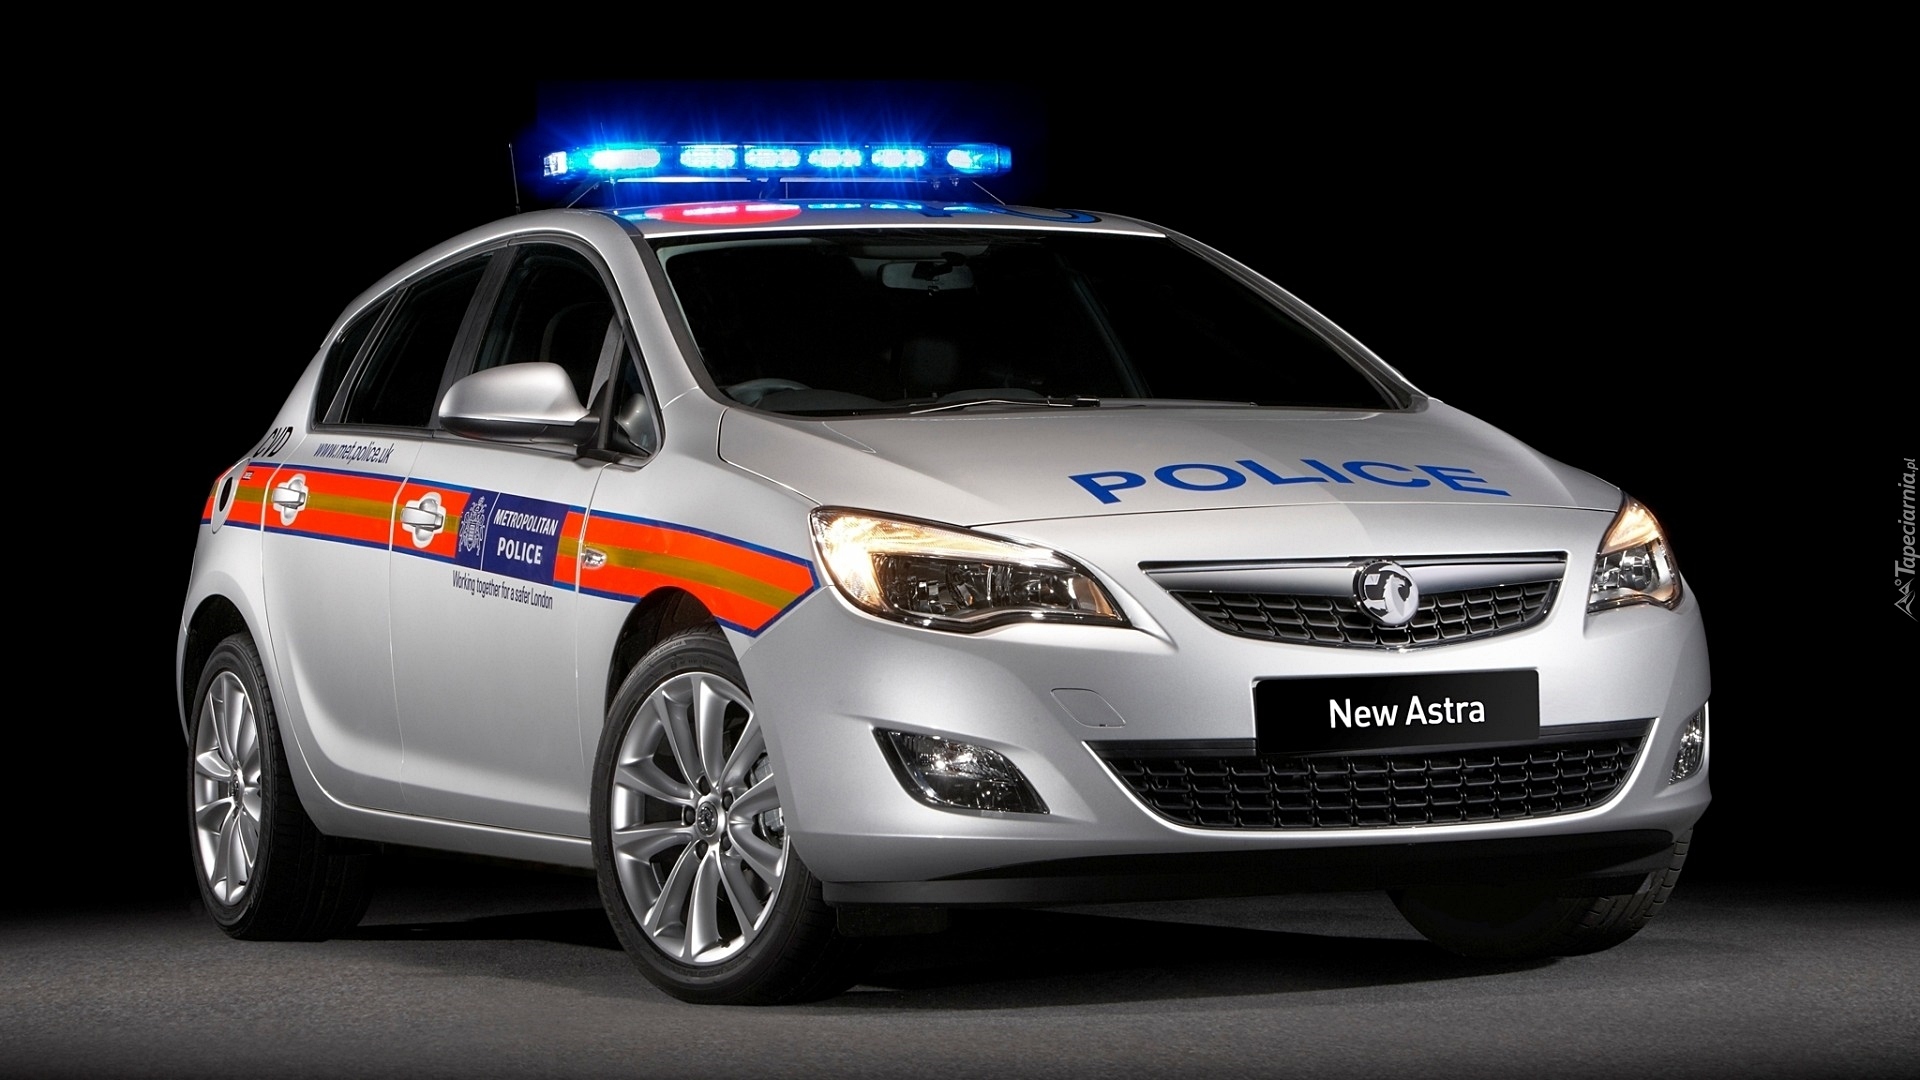 Policyjny, Vauxhall Astra, 2010